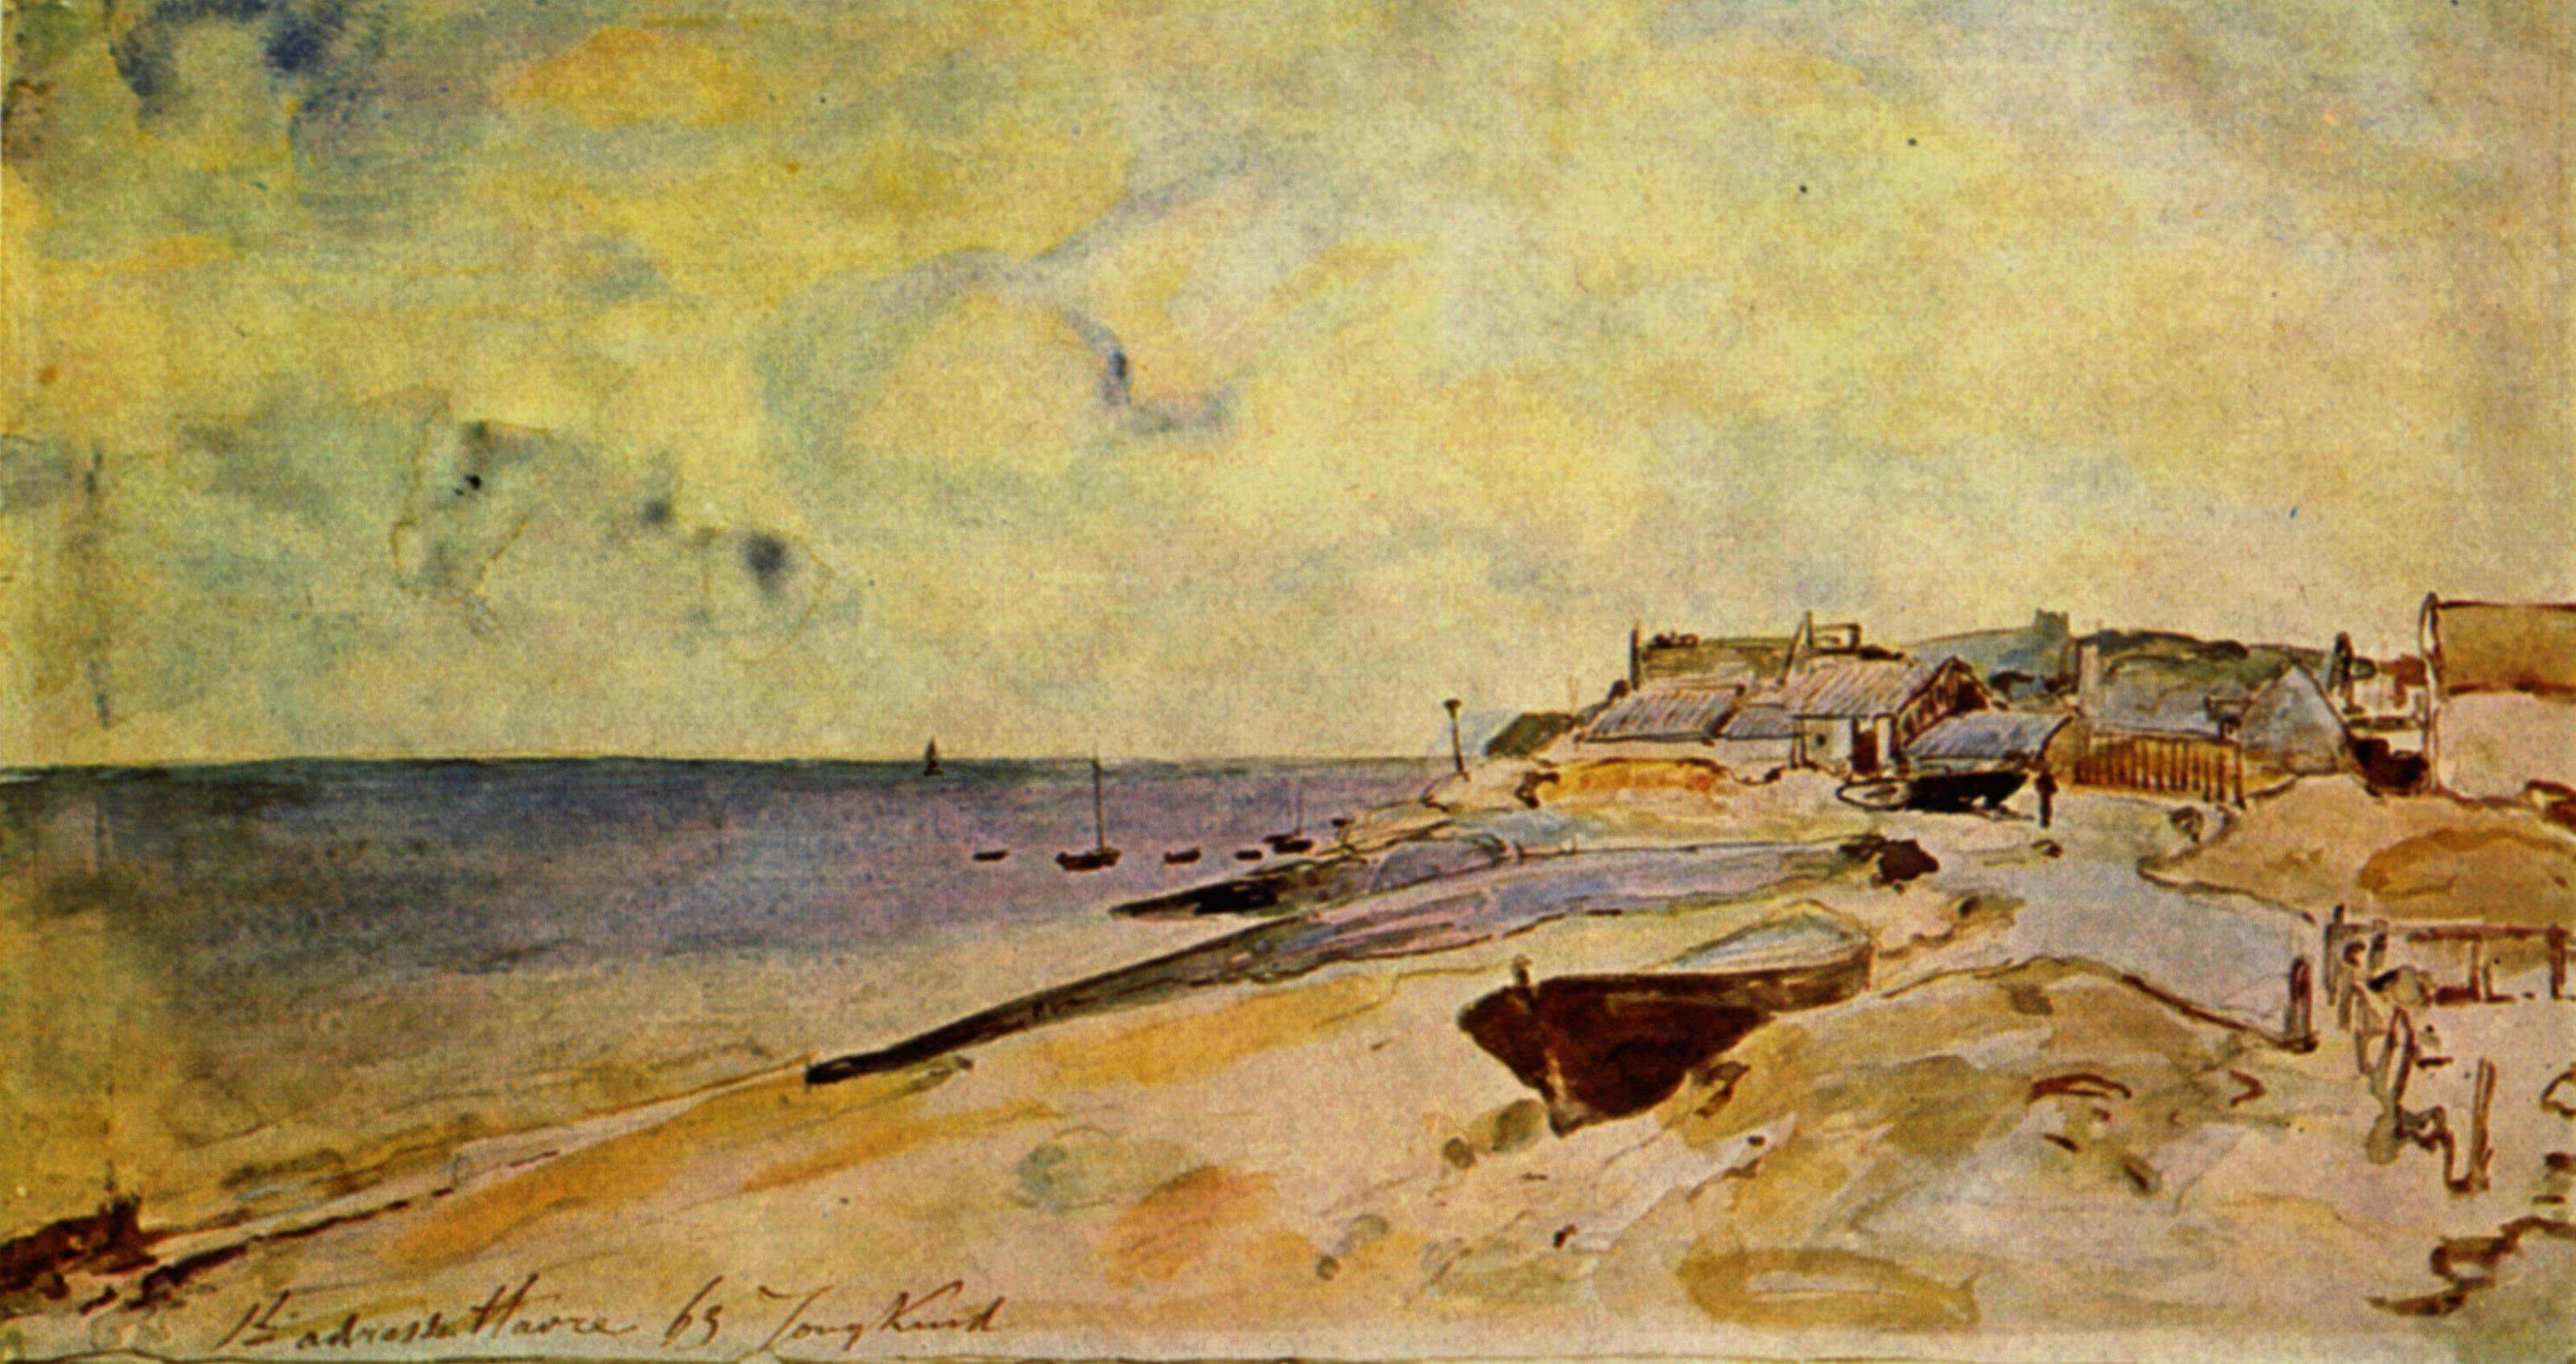 La plage de Sainte-Adresse by Johan Jongkind - 1863 - 30 × 57 cm Musée du Louvre